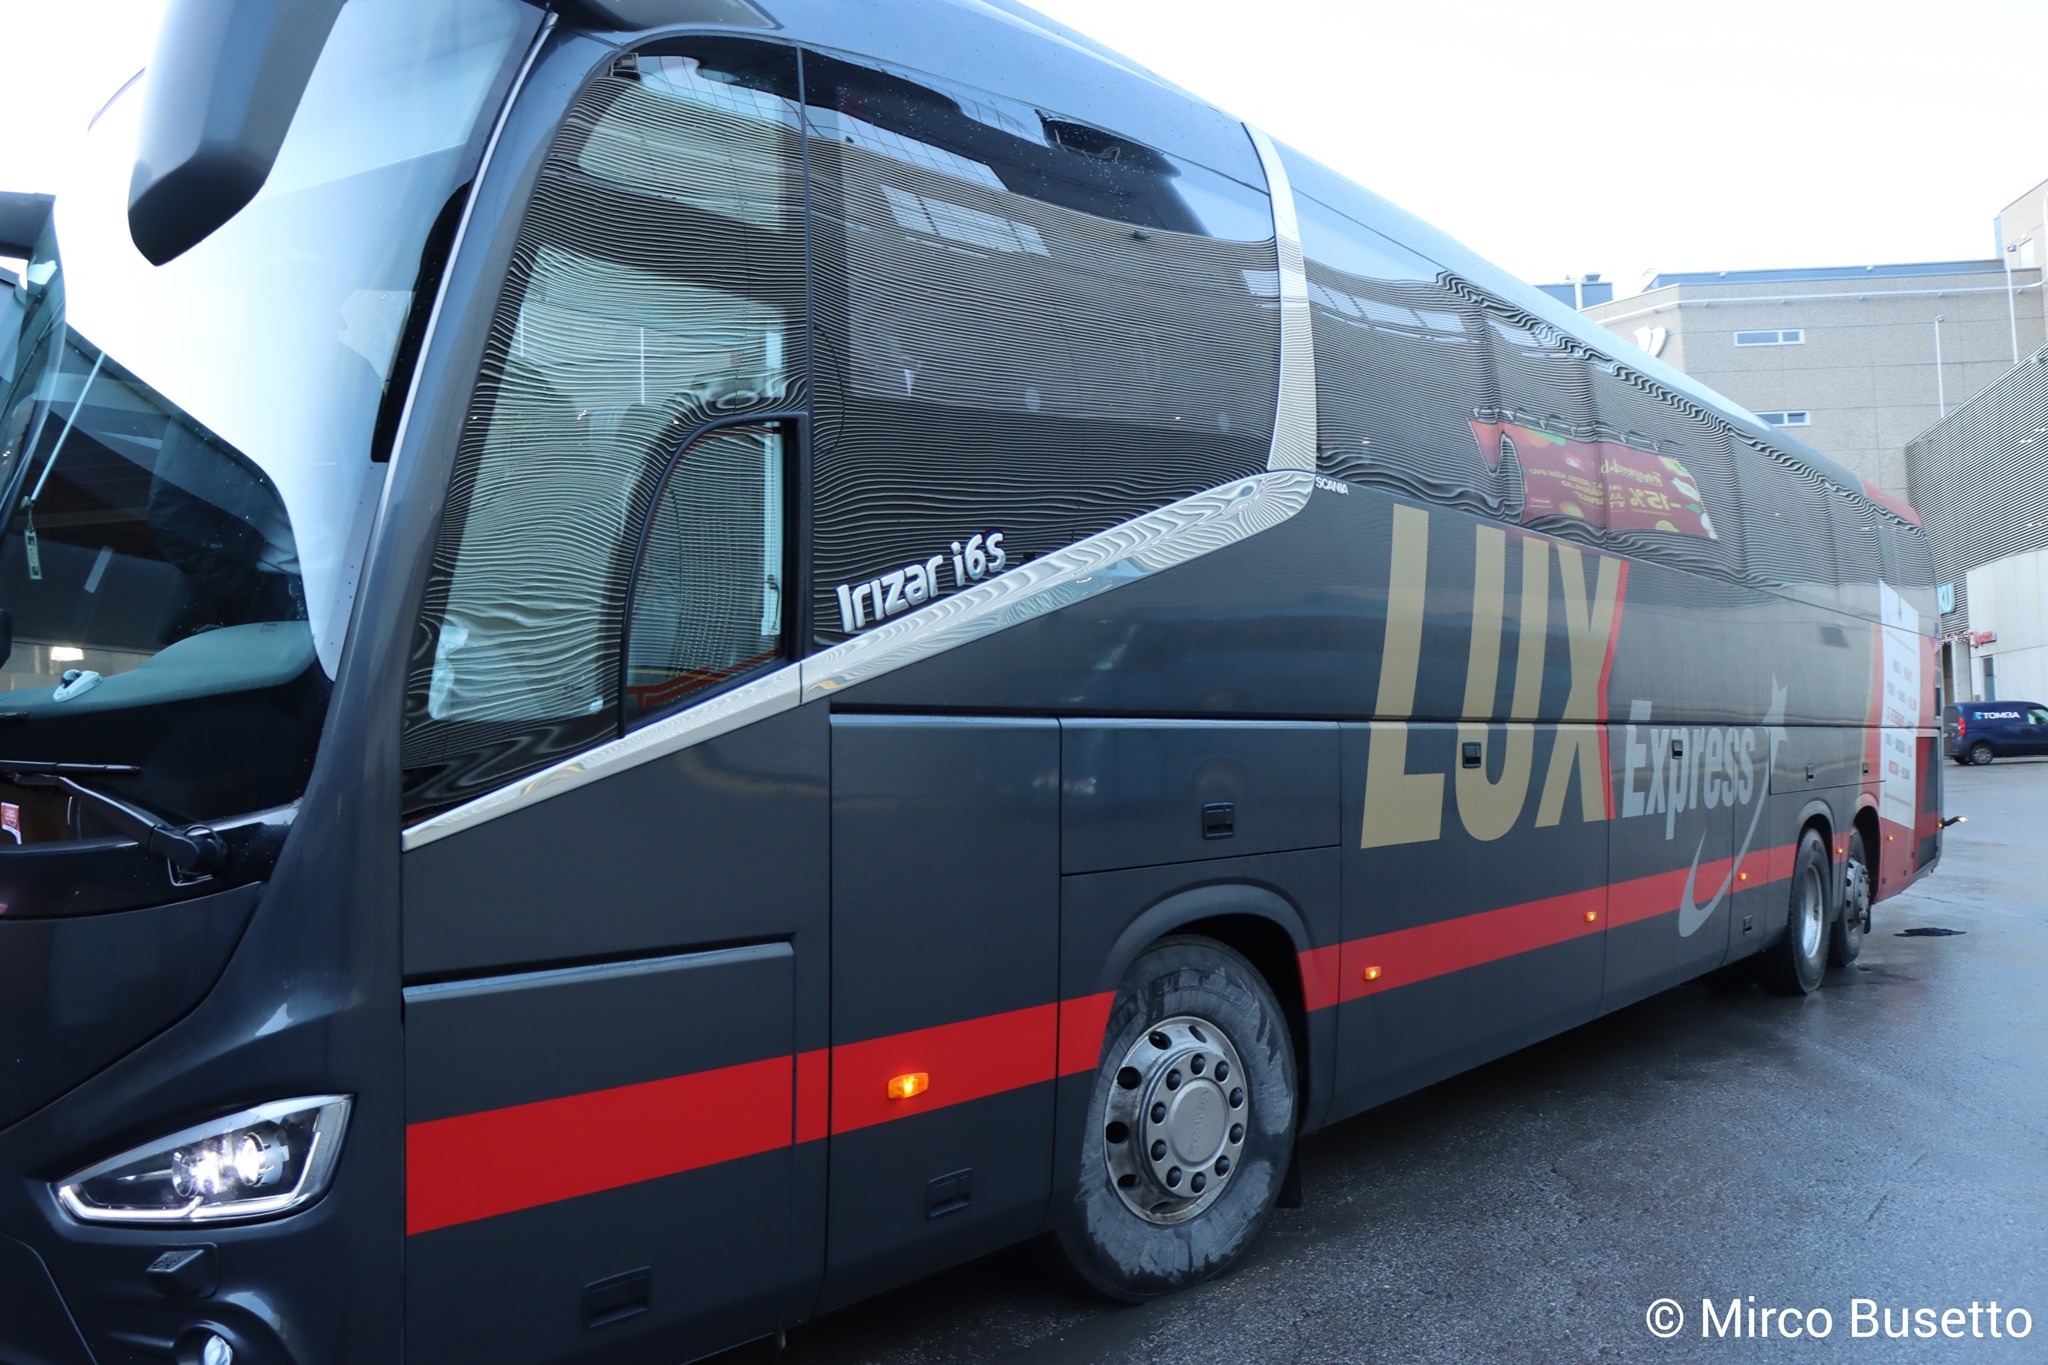 Lux Express bus to Estonia